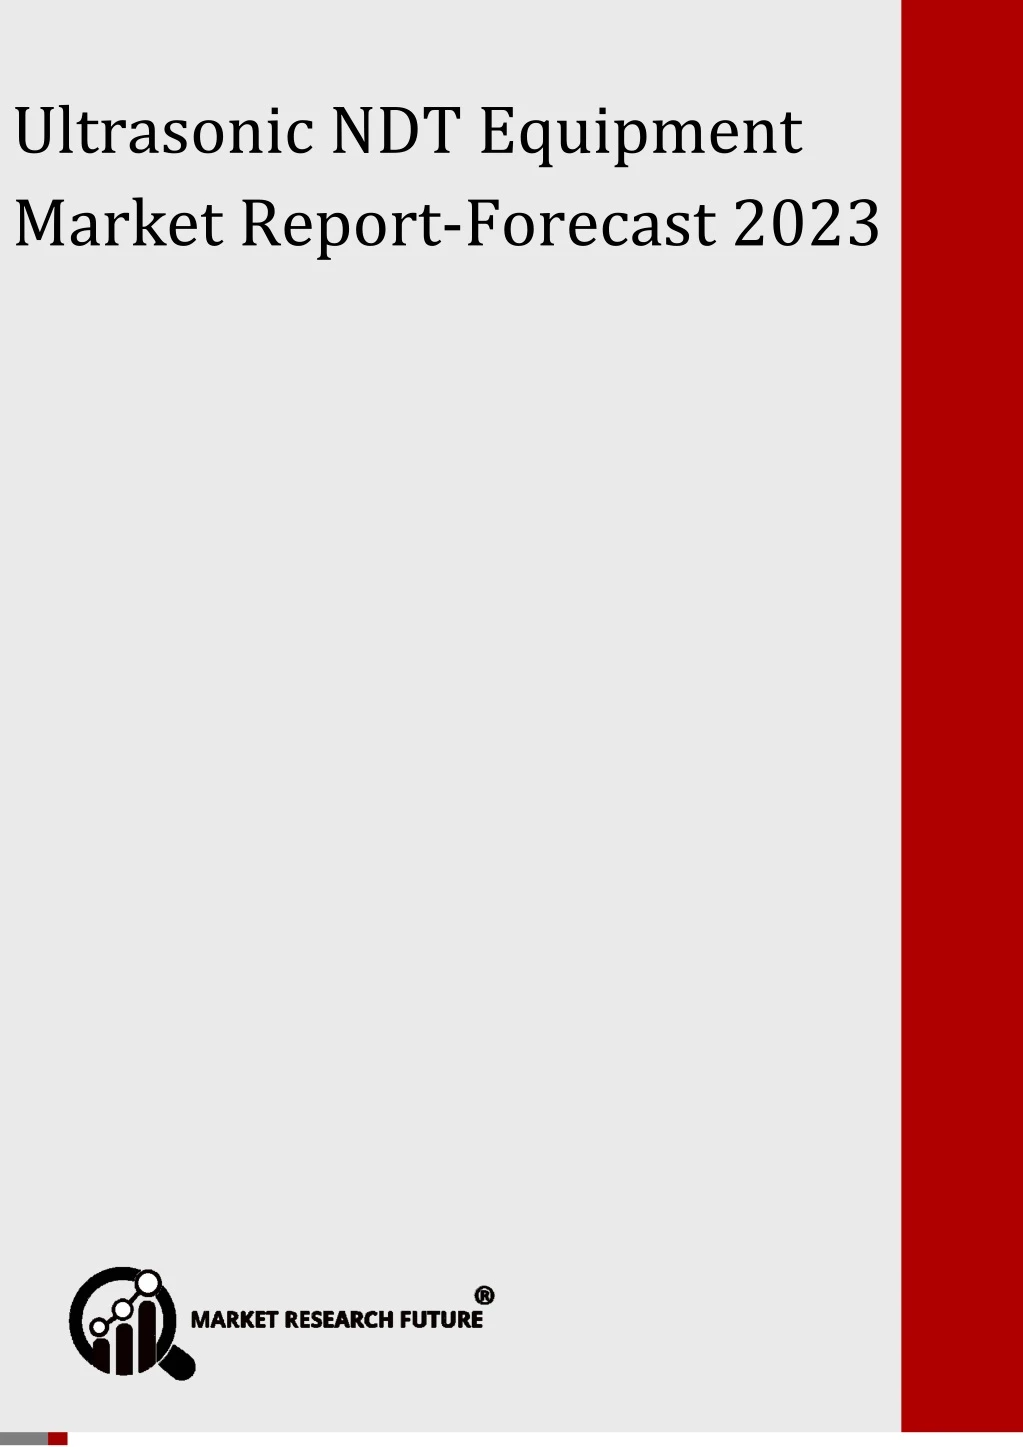 global ultrasonic ndt equipment market forecast